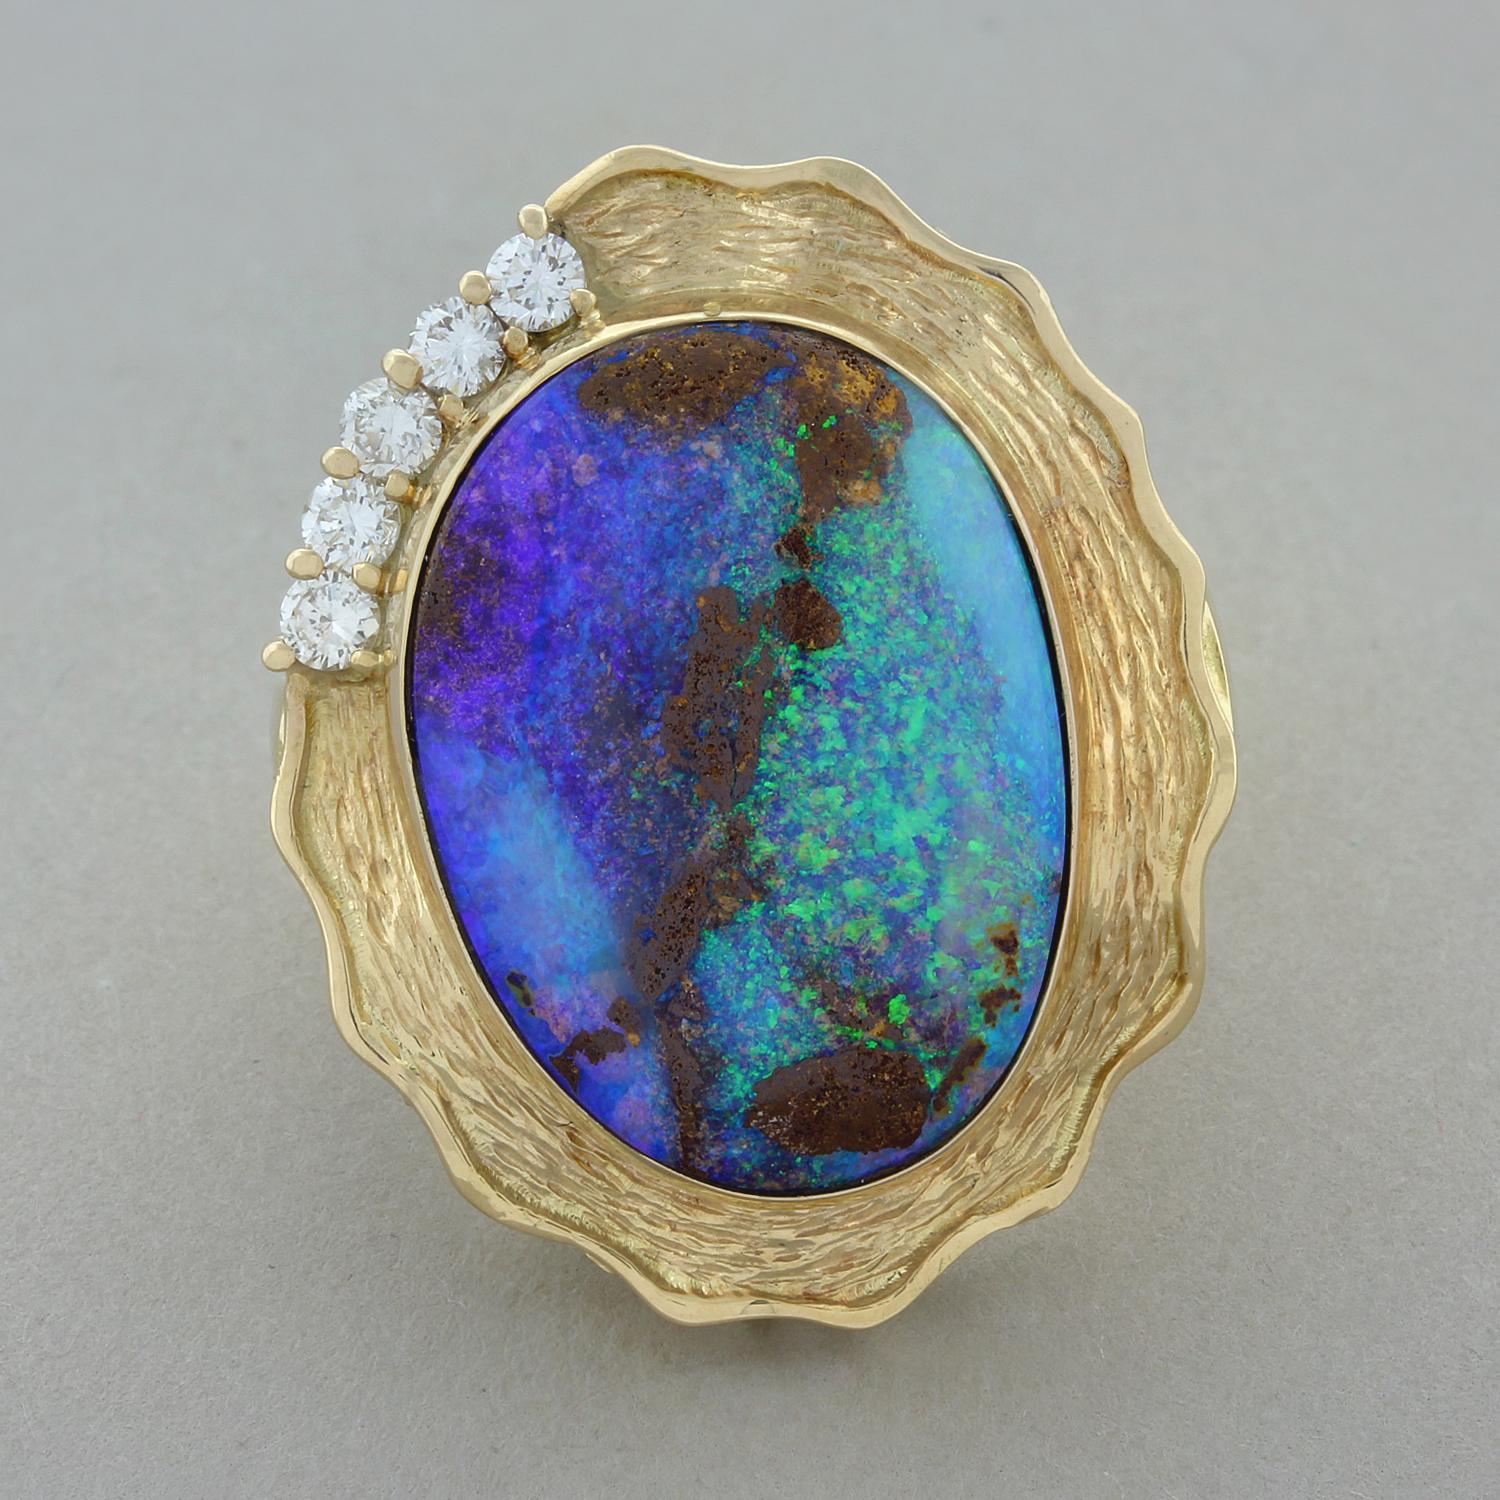 Ein prächtiger Ring mit einem 14,15 Karat schweren Boulder-Opal in einer Lünette mit außergewöhnlichem Farbspiel. Der Opal wird von 5 runden Diamanten im Brillantschliff mit insgesamt 0,32 Karat akzentuiert. Der Ring ist handgefertigt aus 18 Karat